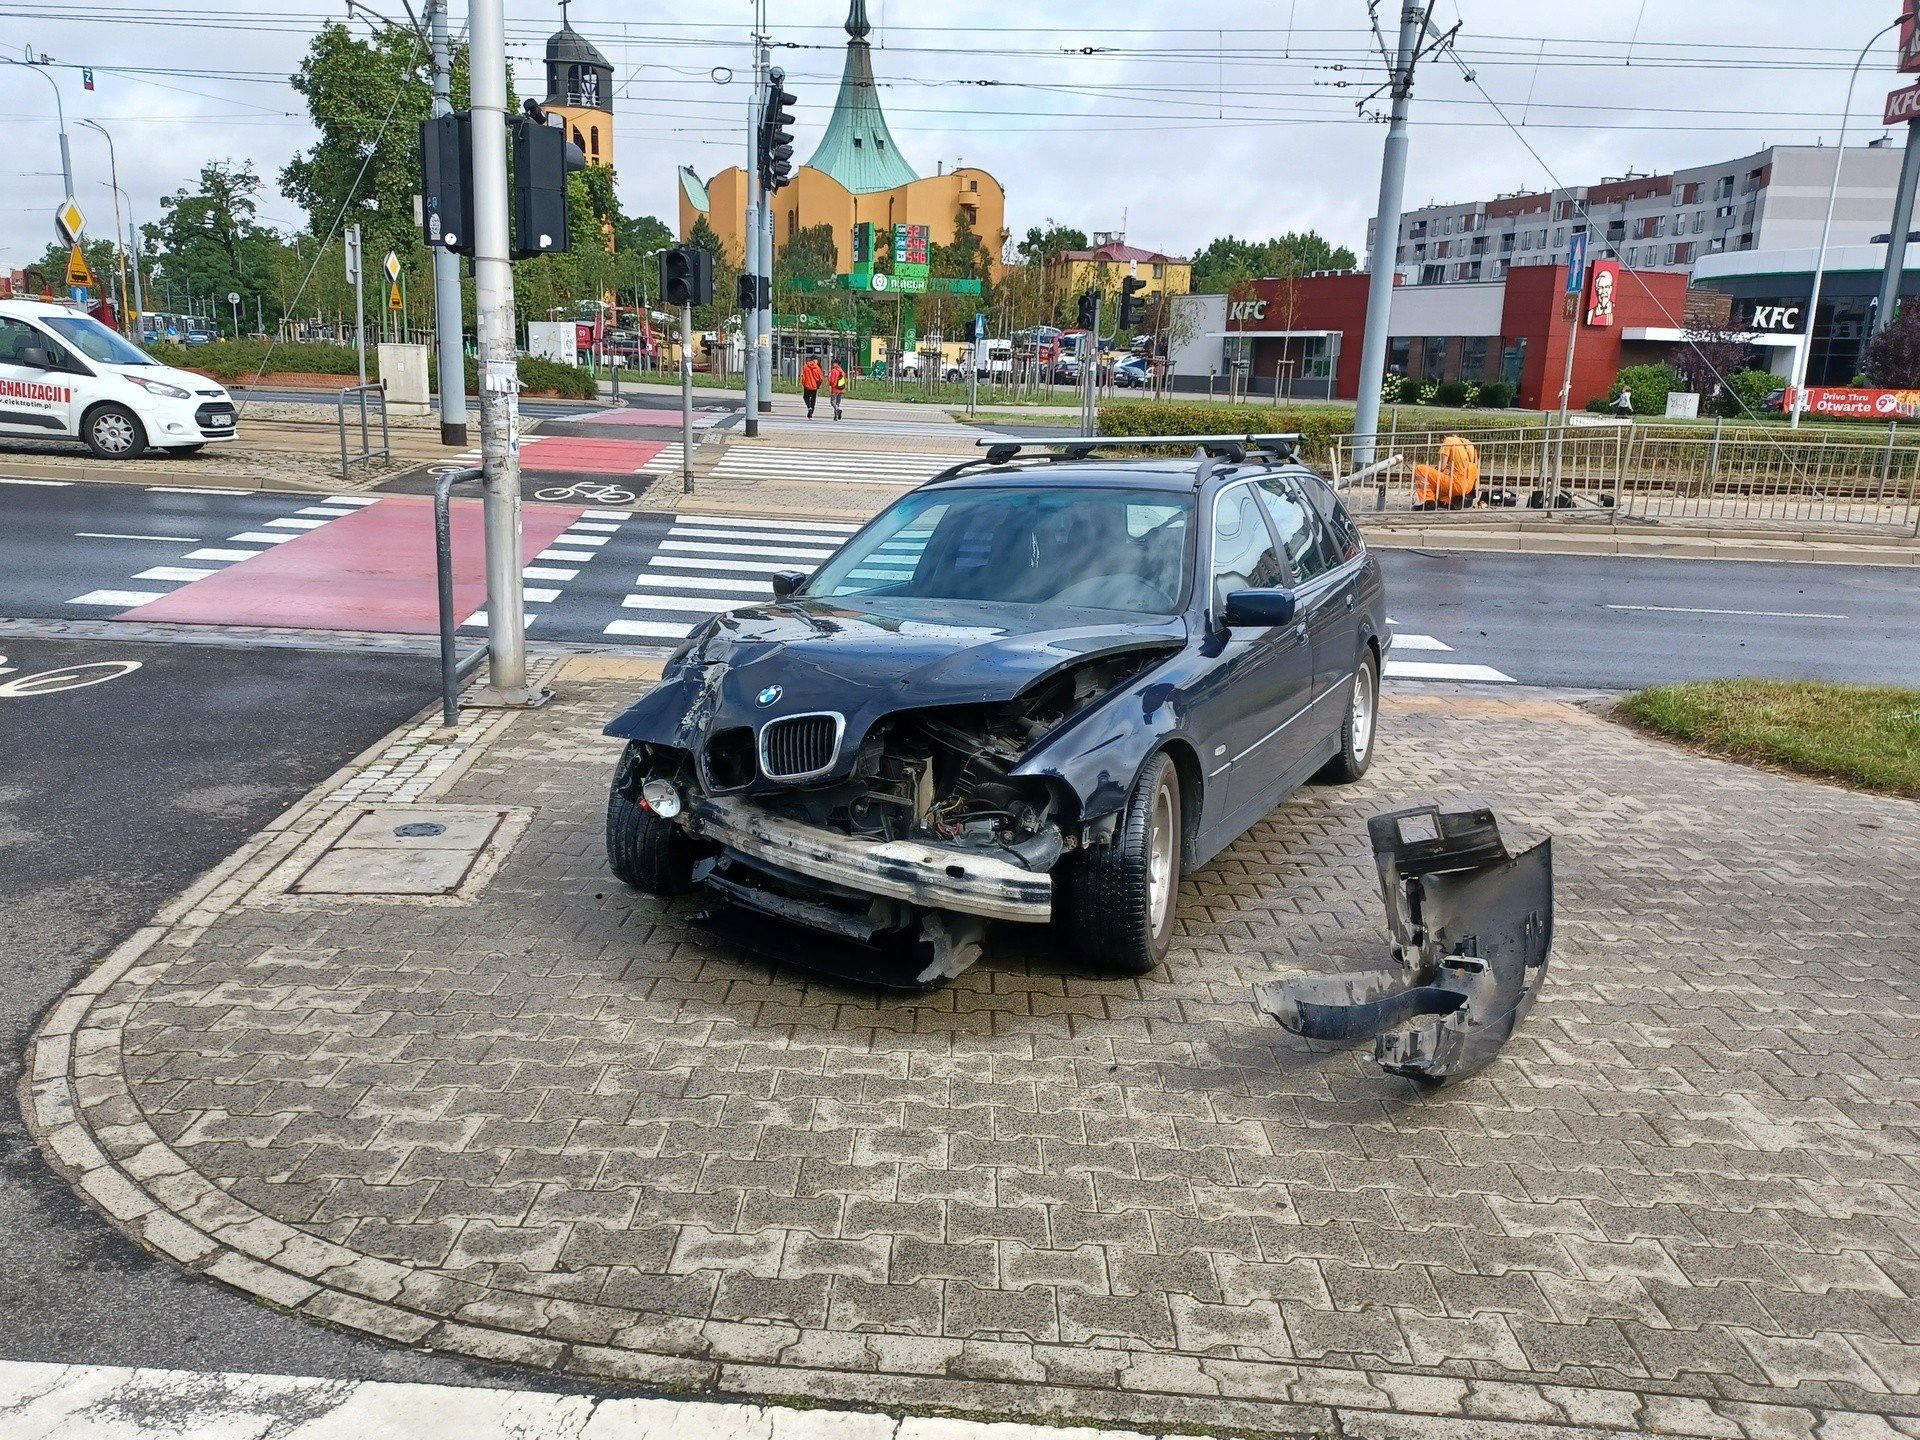 Kierowca BMW wjechał w sygnalizator. Nie działały światła